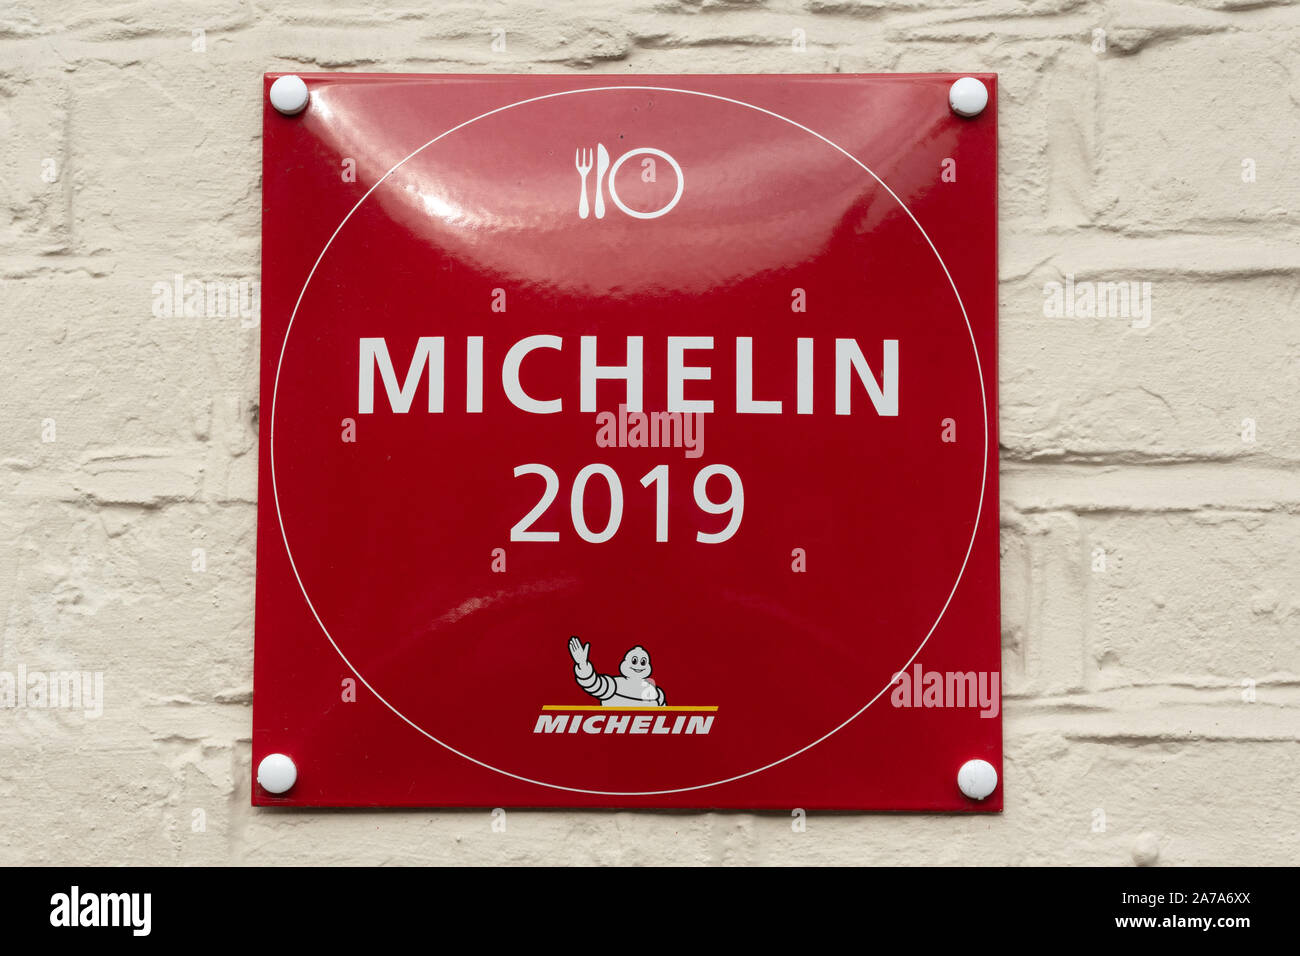 Guide Michelin Bib Gourmand Symbol, und die Platte, Michelin, eine Bewertung, die erkennt, freundliche Betriebe, die gutes Essen zu moderaten Preisen dienen, Großbritannien Stockfoto